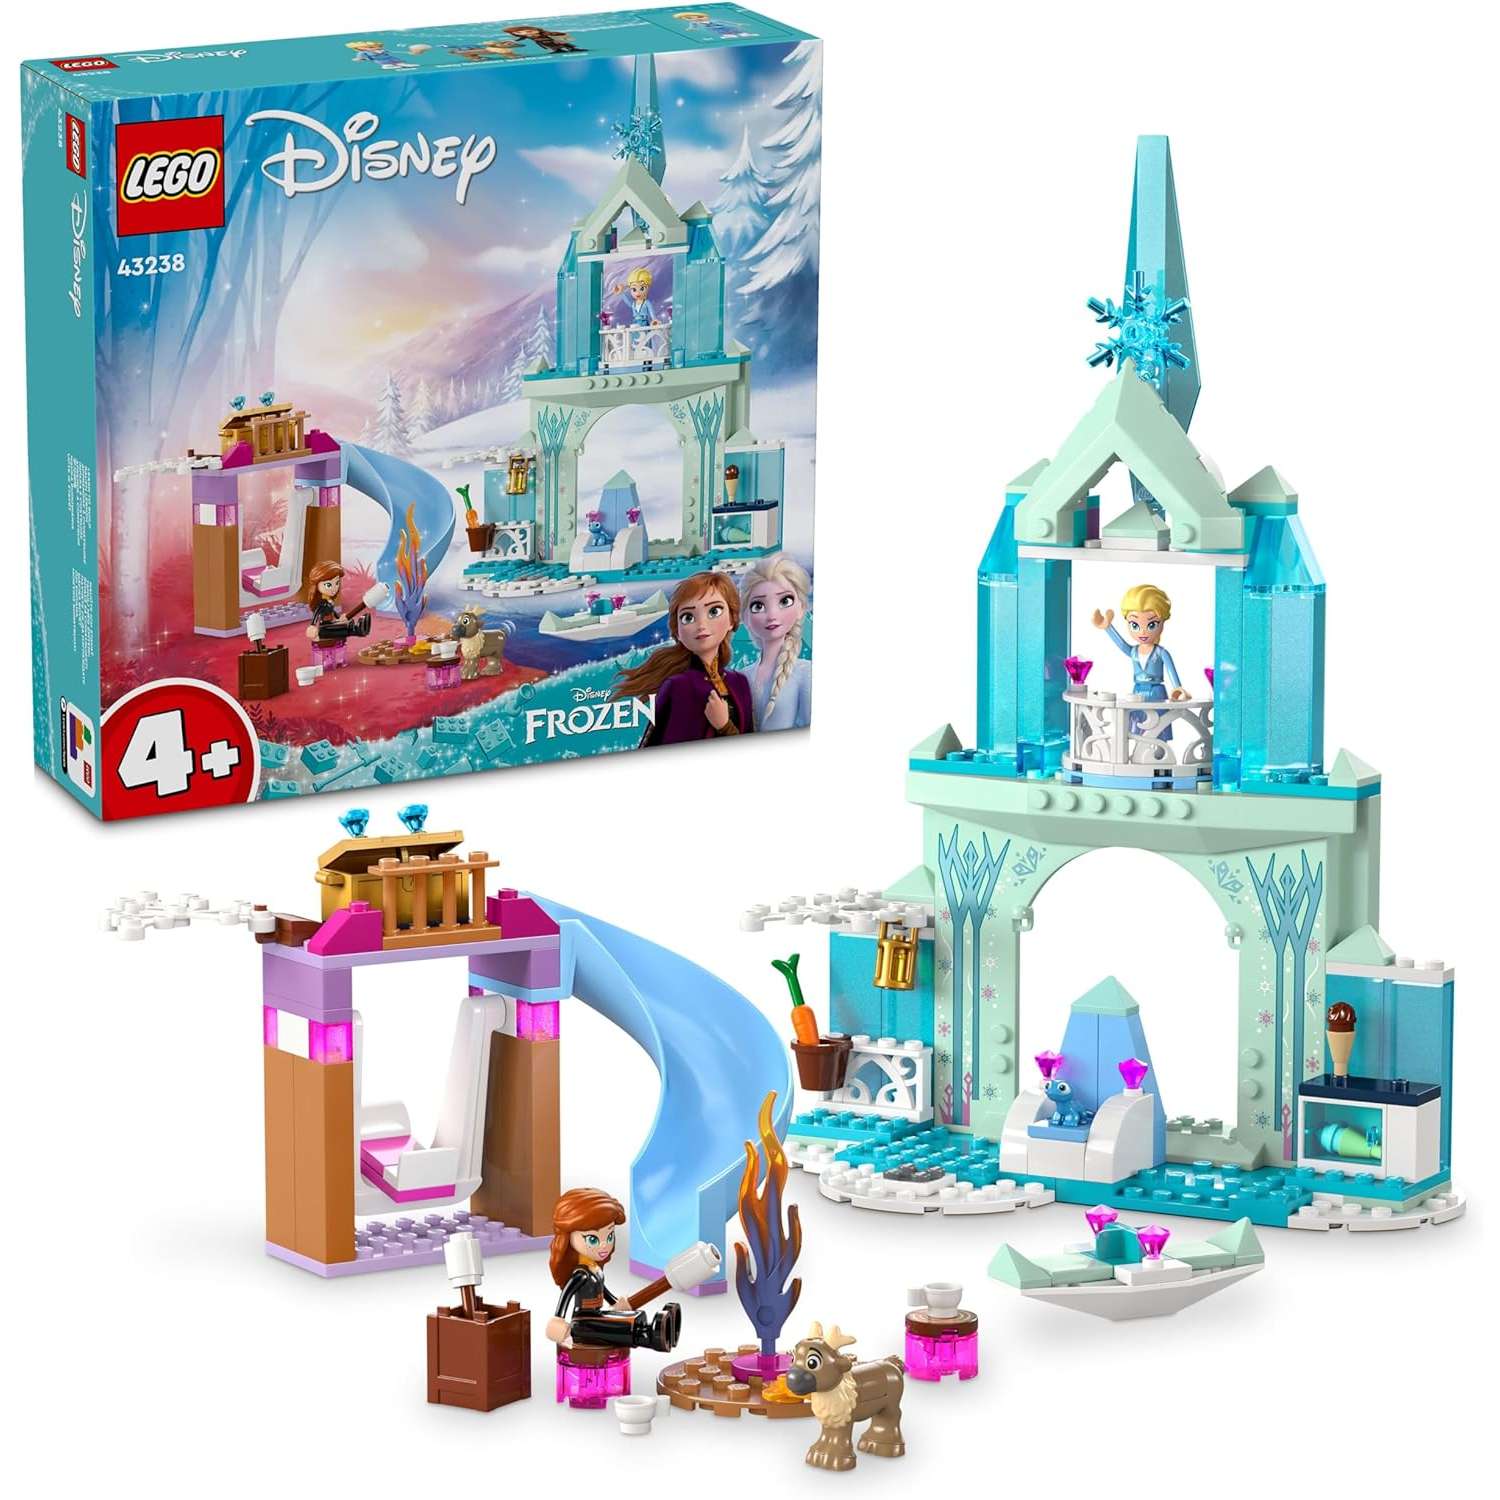 Конструктор LEGO Disney Princess Ледяной замок Эльзы 43238 - фото 1